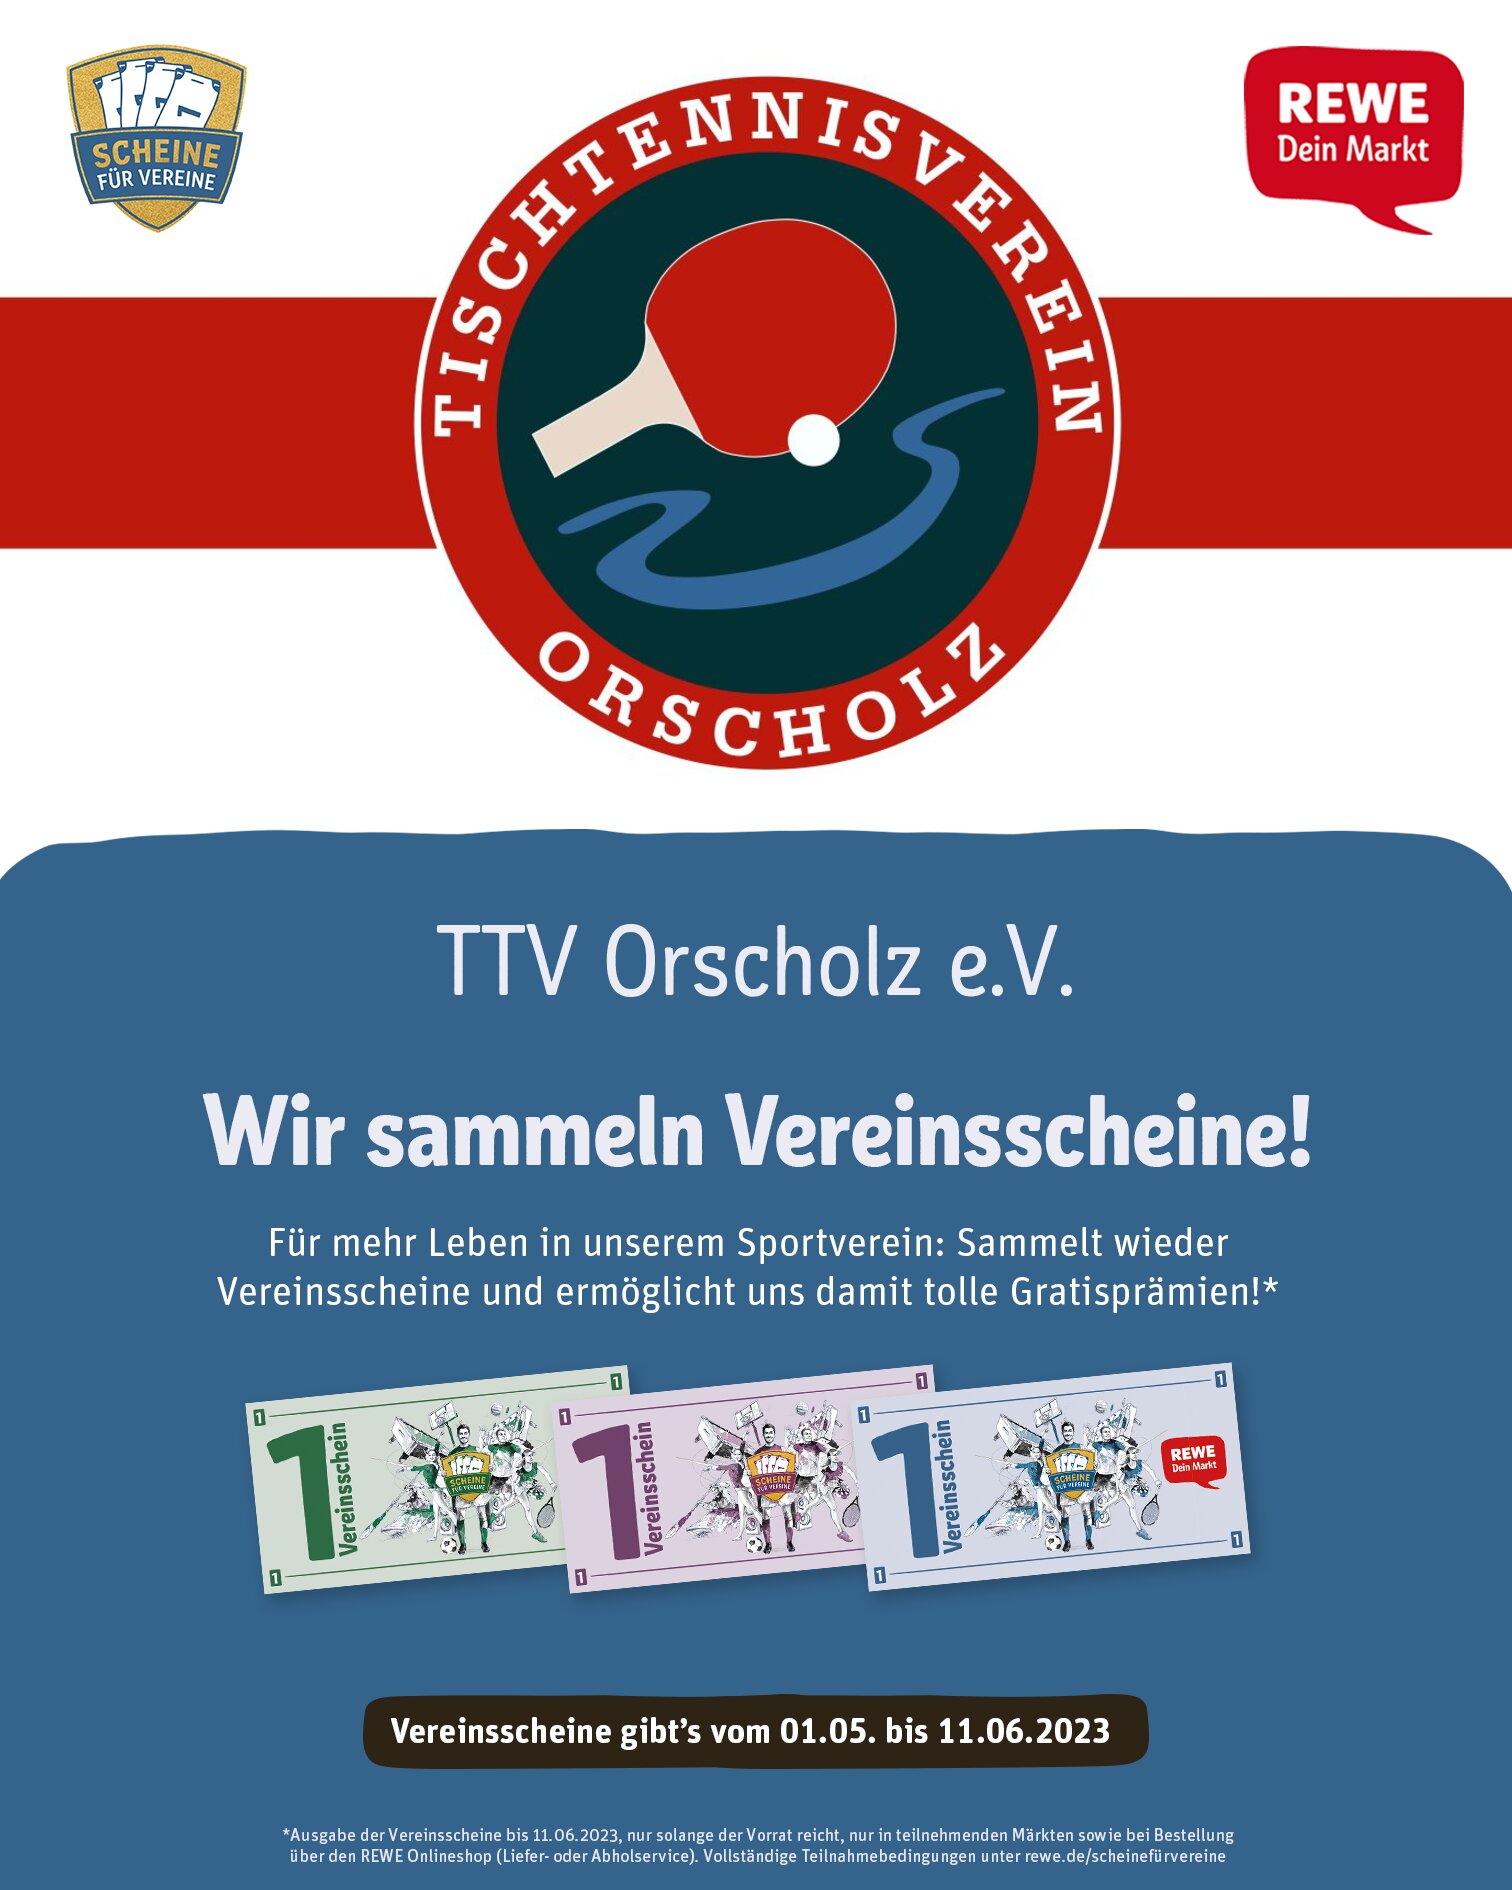 REWE Scheine für Vereine | Tischtennisverein Orscholz e.V.